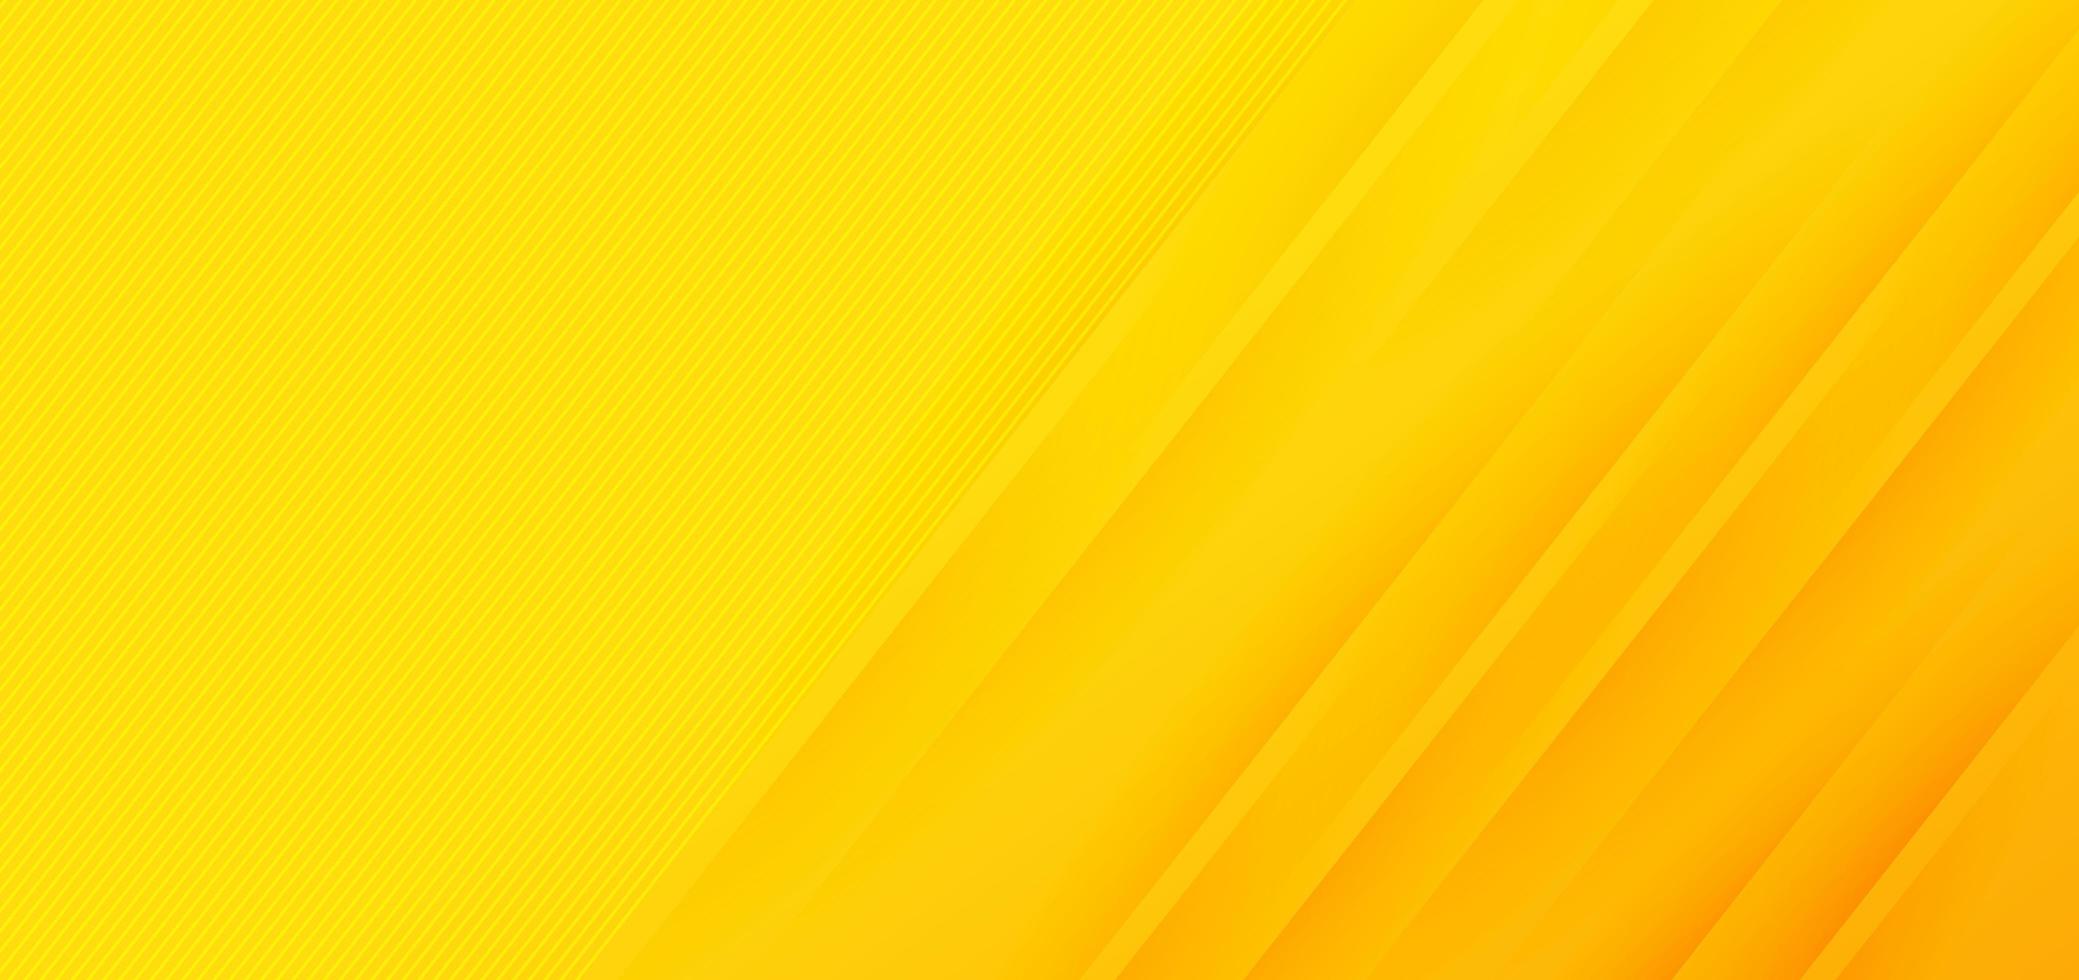 abstrakter moderner gelber Farbverlauf diagonale Linien Hintergrund vektor